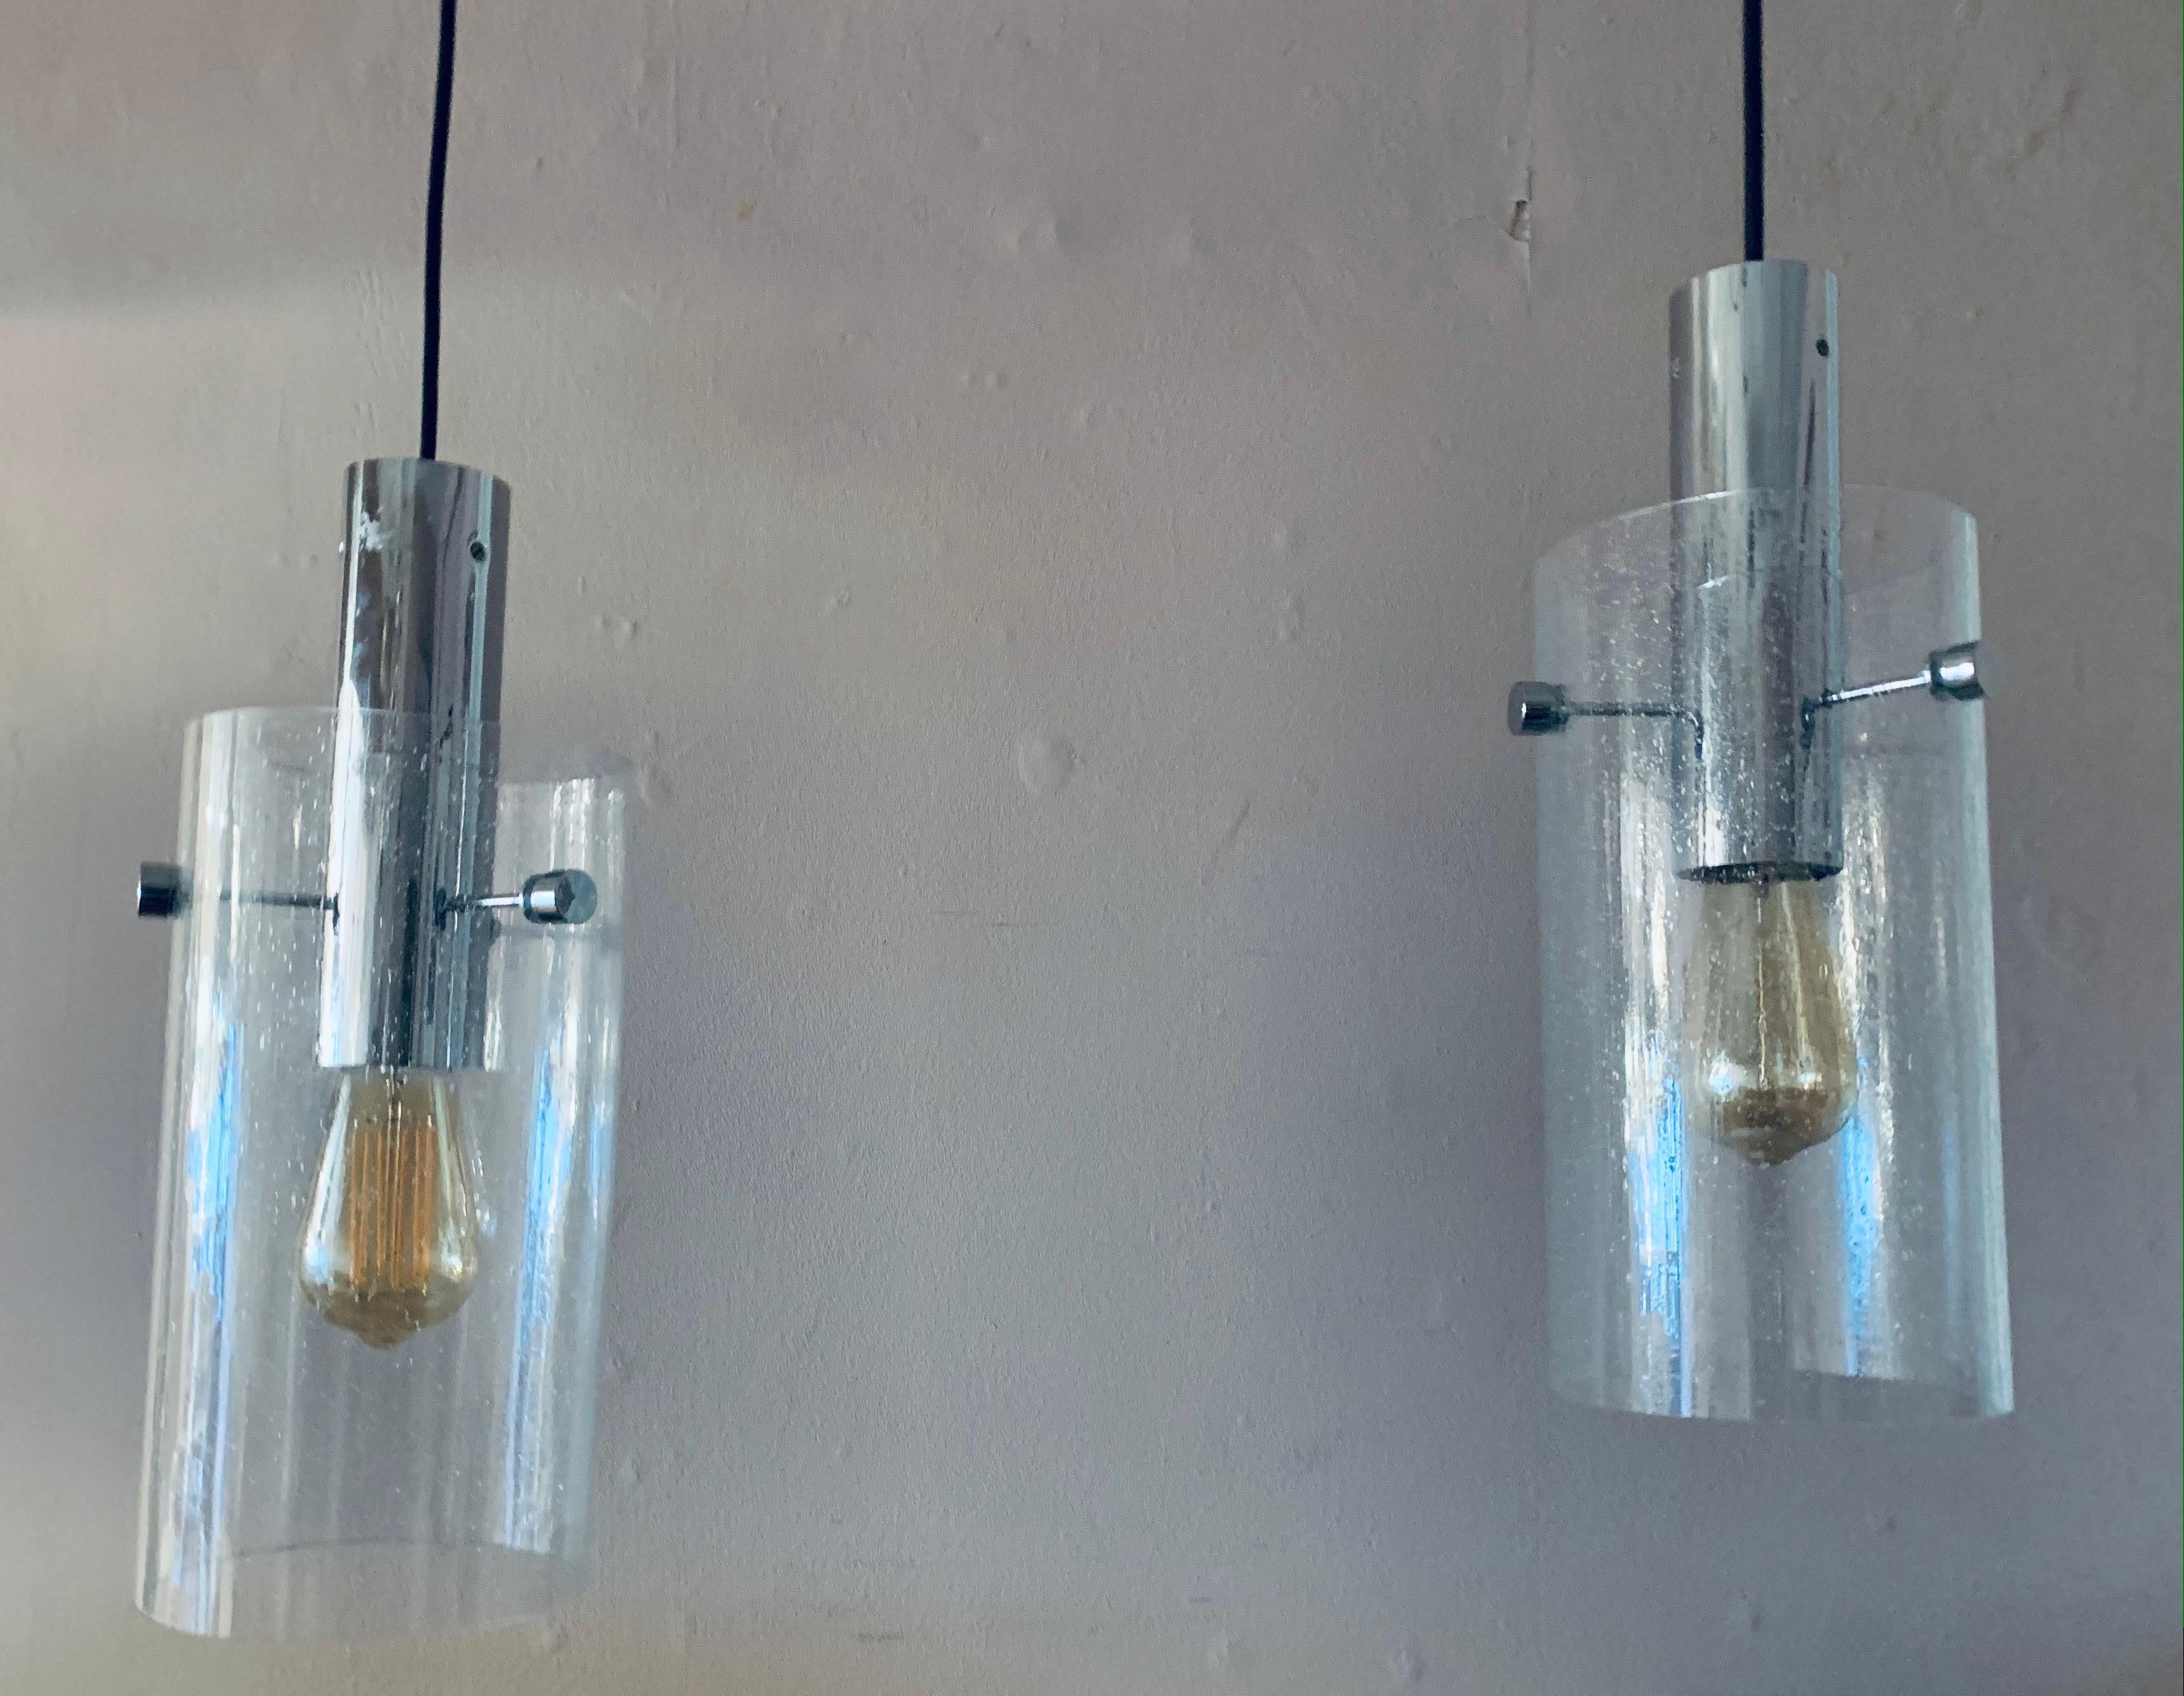 Paire de suspensions cylindriques en verre clair bullé Glashütte Limburg des années 1970, suspendues à des ferrures chromées et à un flexible noir réglable. L'abat-jour en verre bullé est suspendu à un cylindre chromé par trois tiges de support